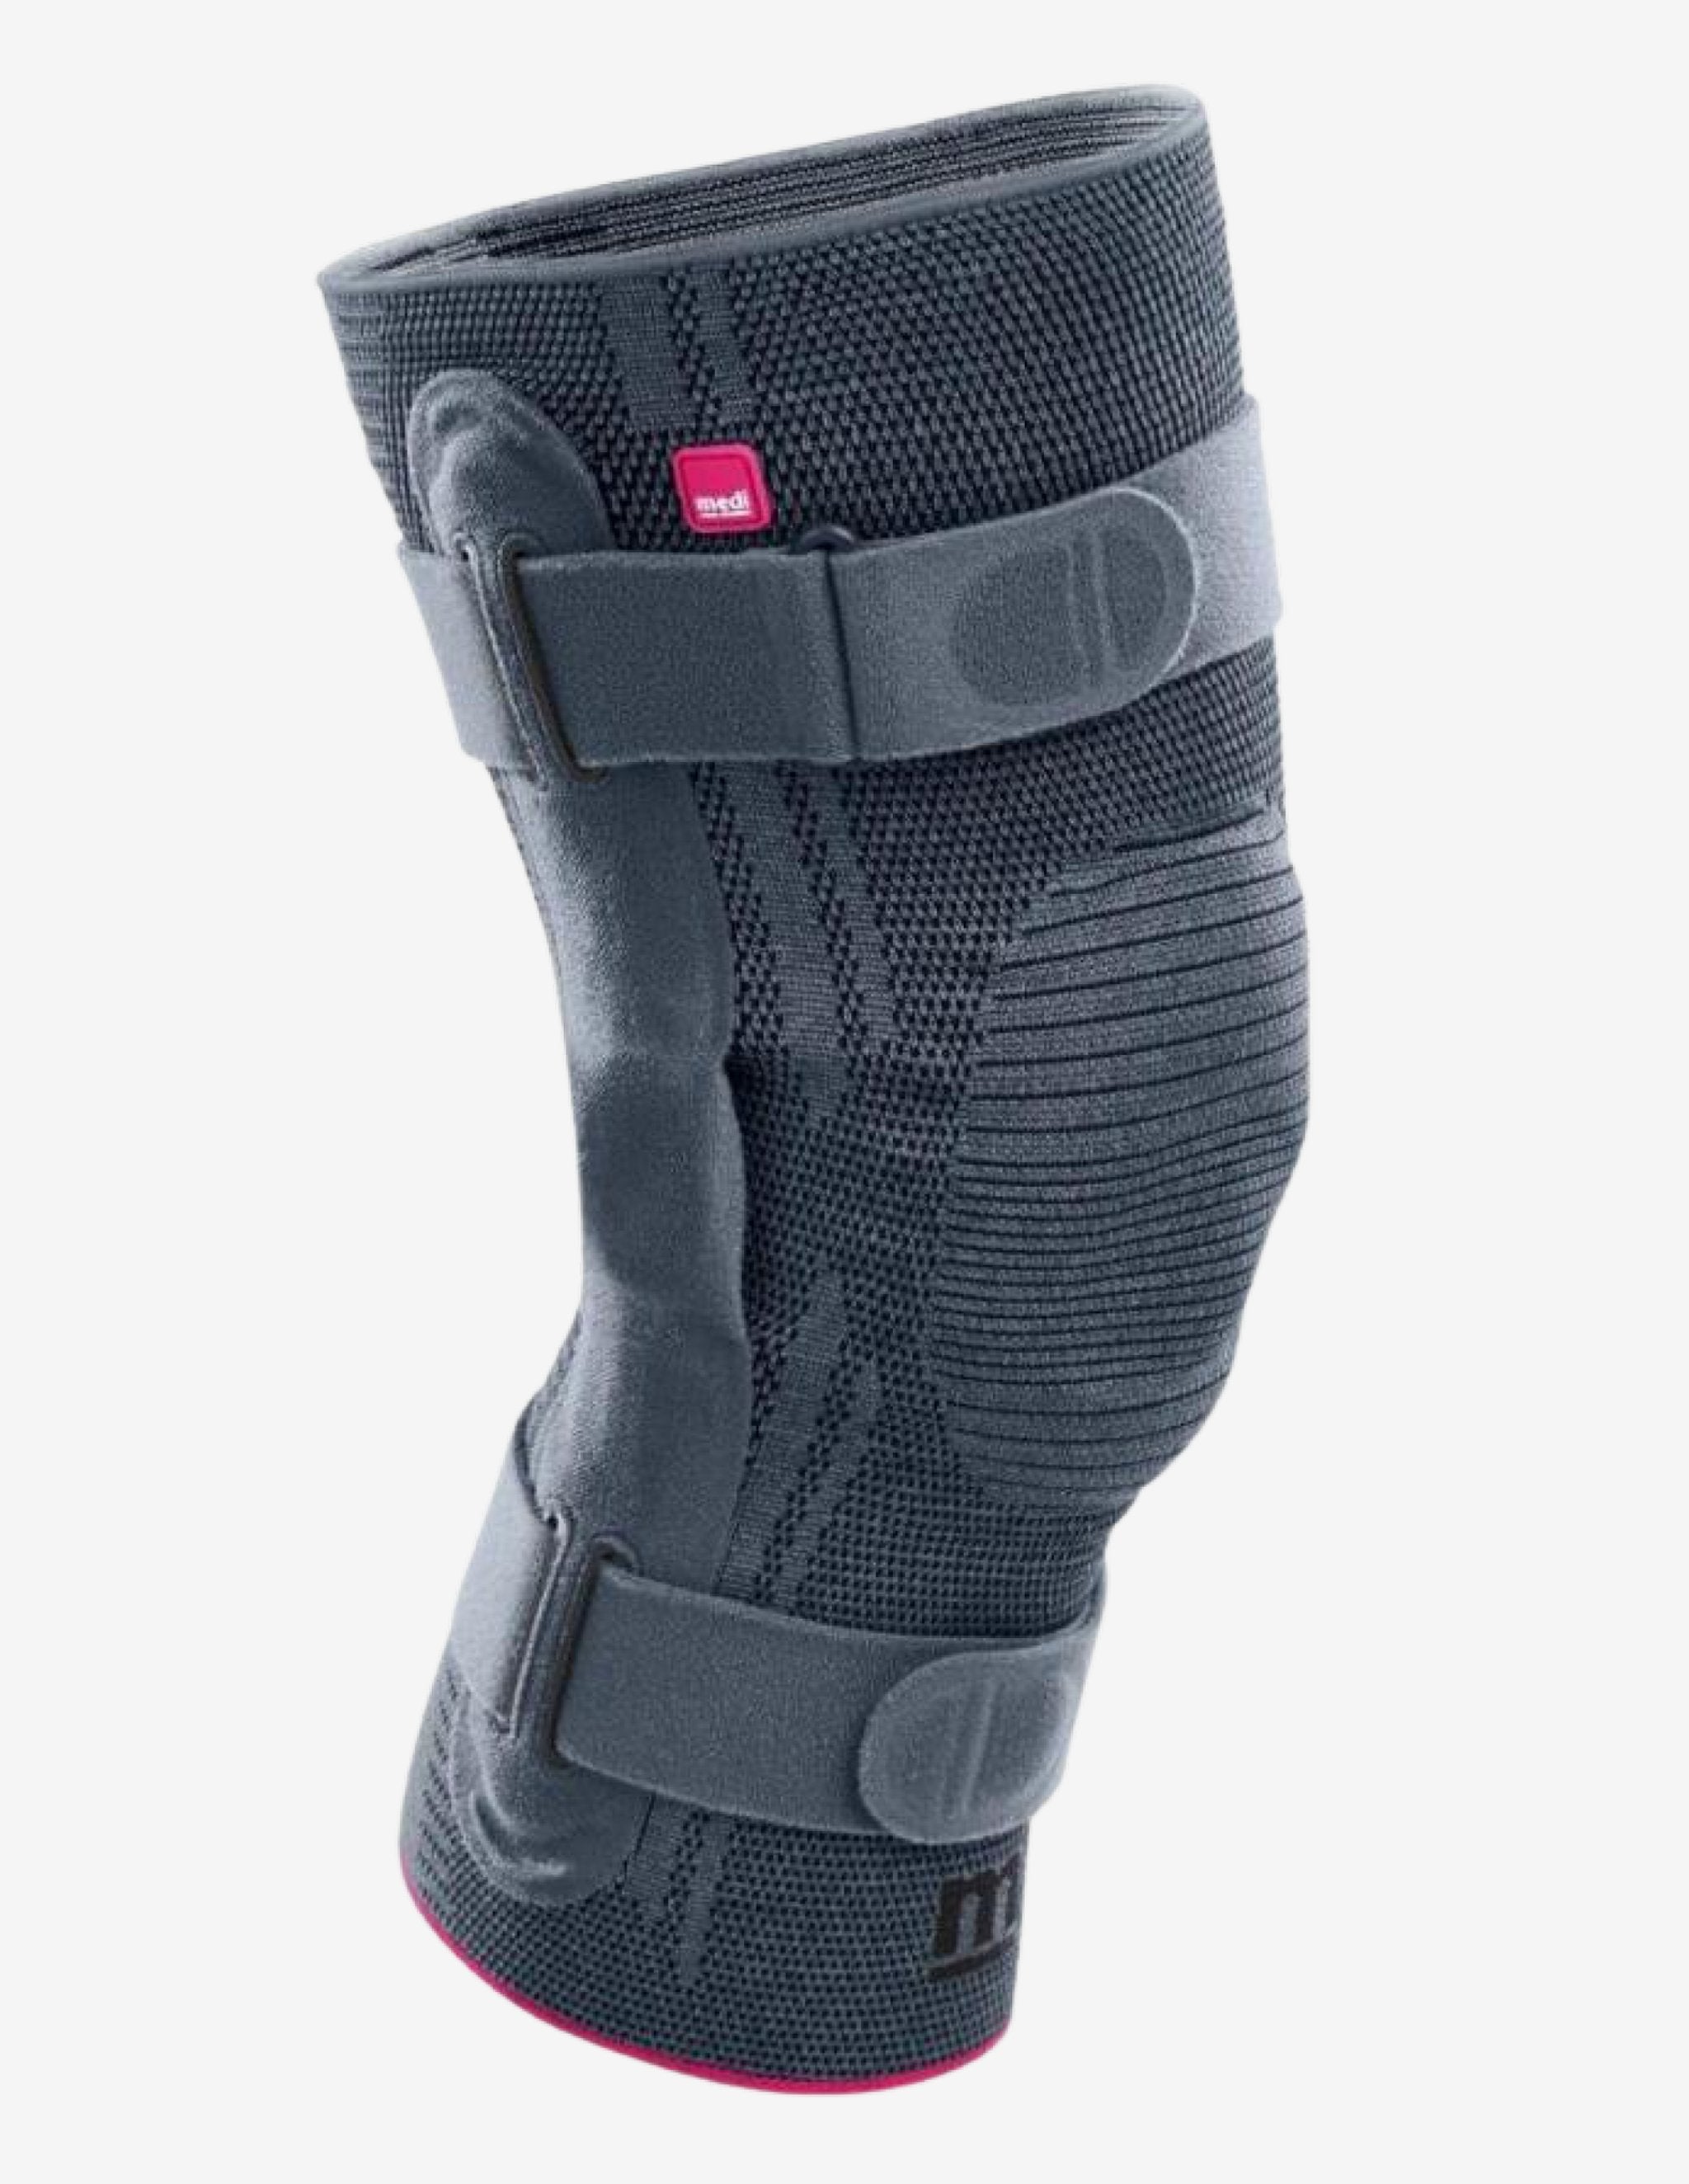 Medi Genumedi Pro Knee Brace-Injury braces-CEP Compression-Guru Muscle